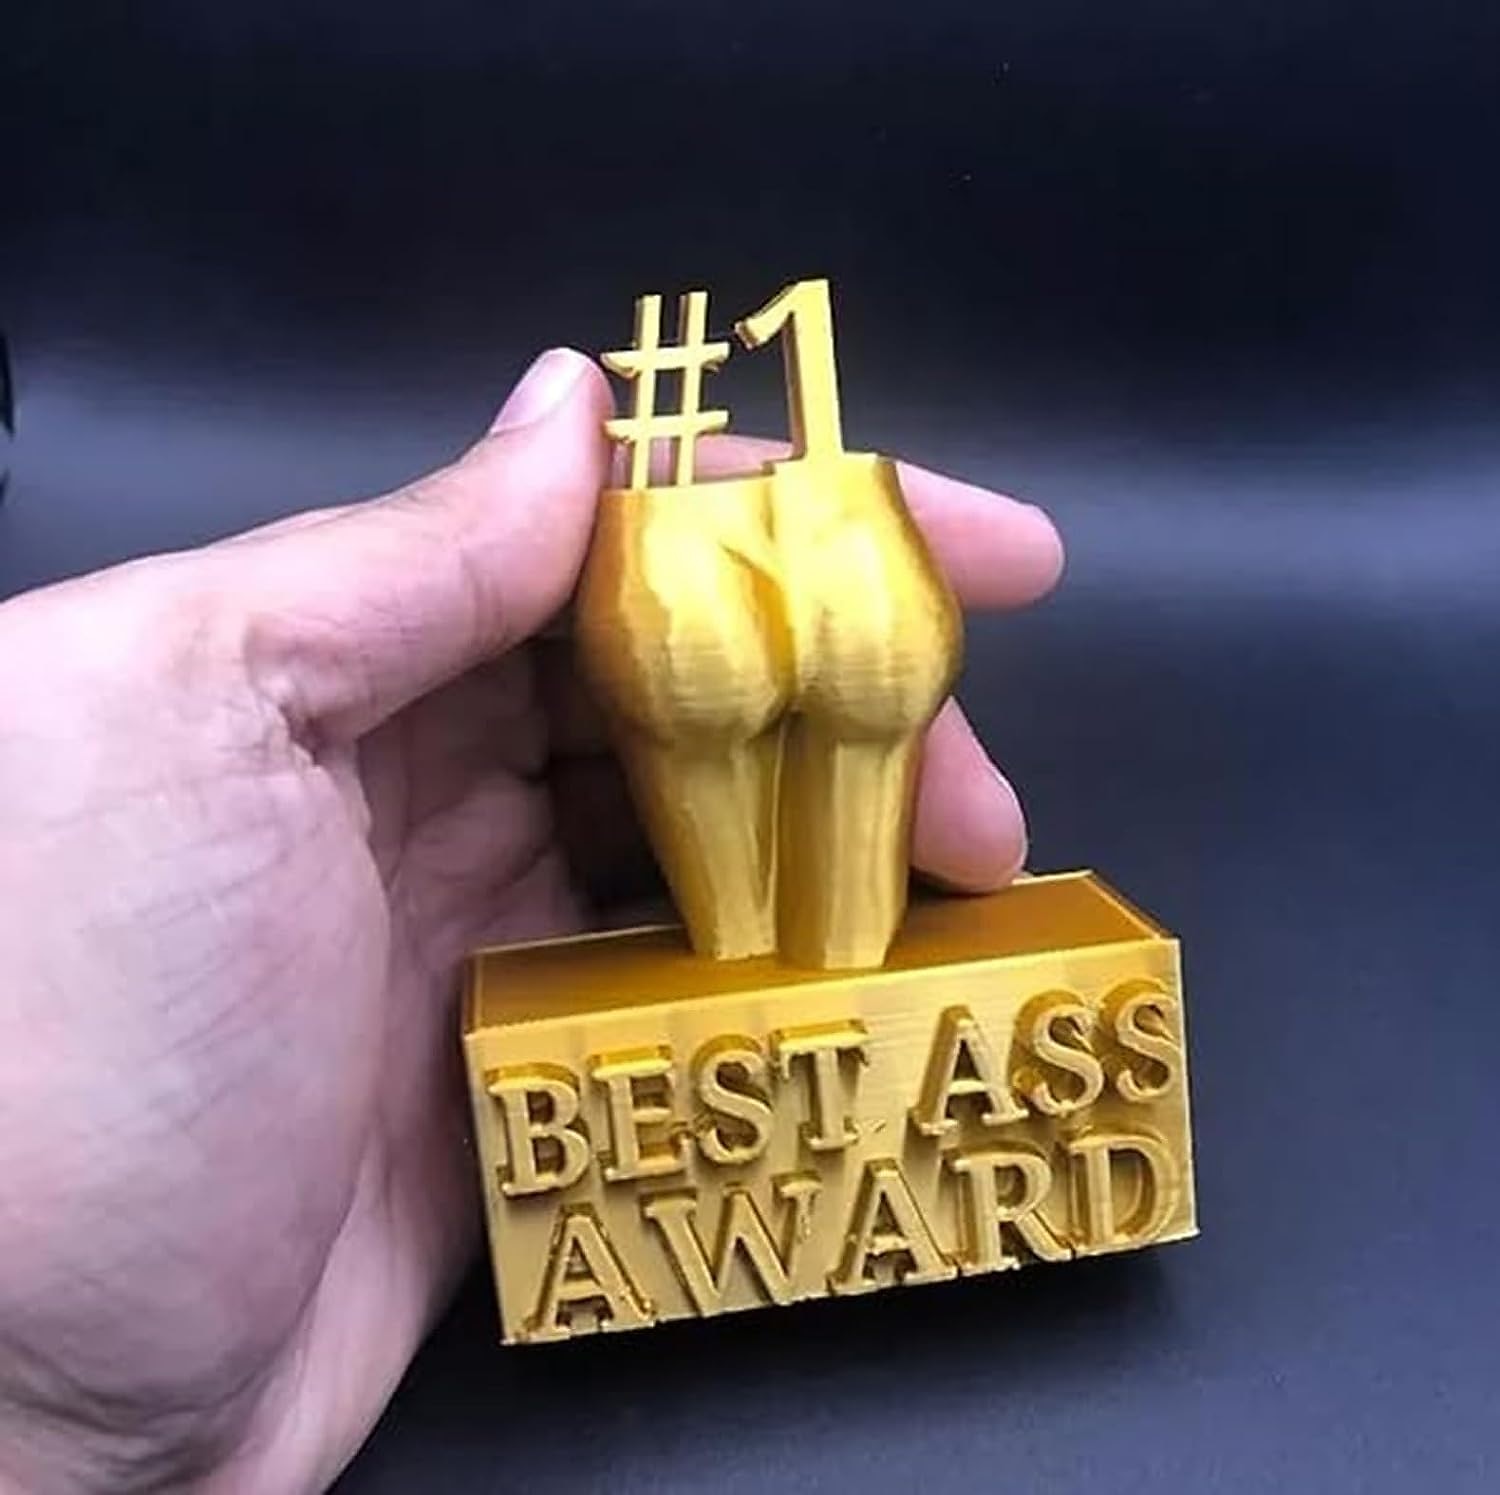 Best Ass Award - Best Boobs Award, Funny Trophy Resin Statue